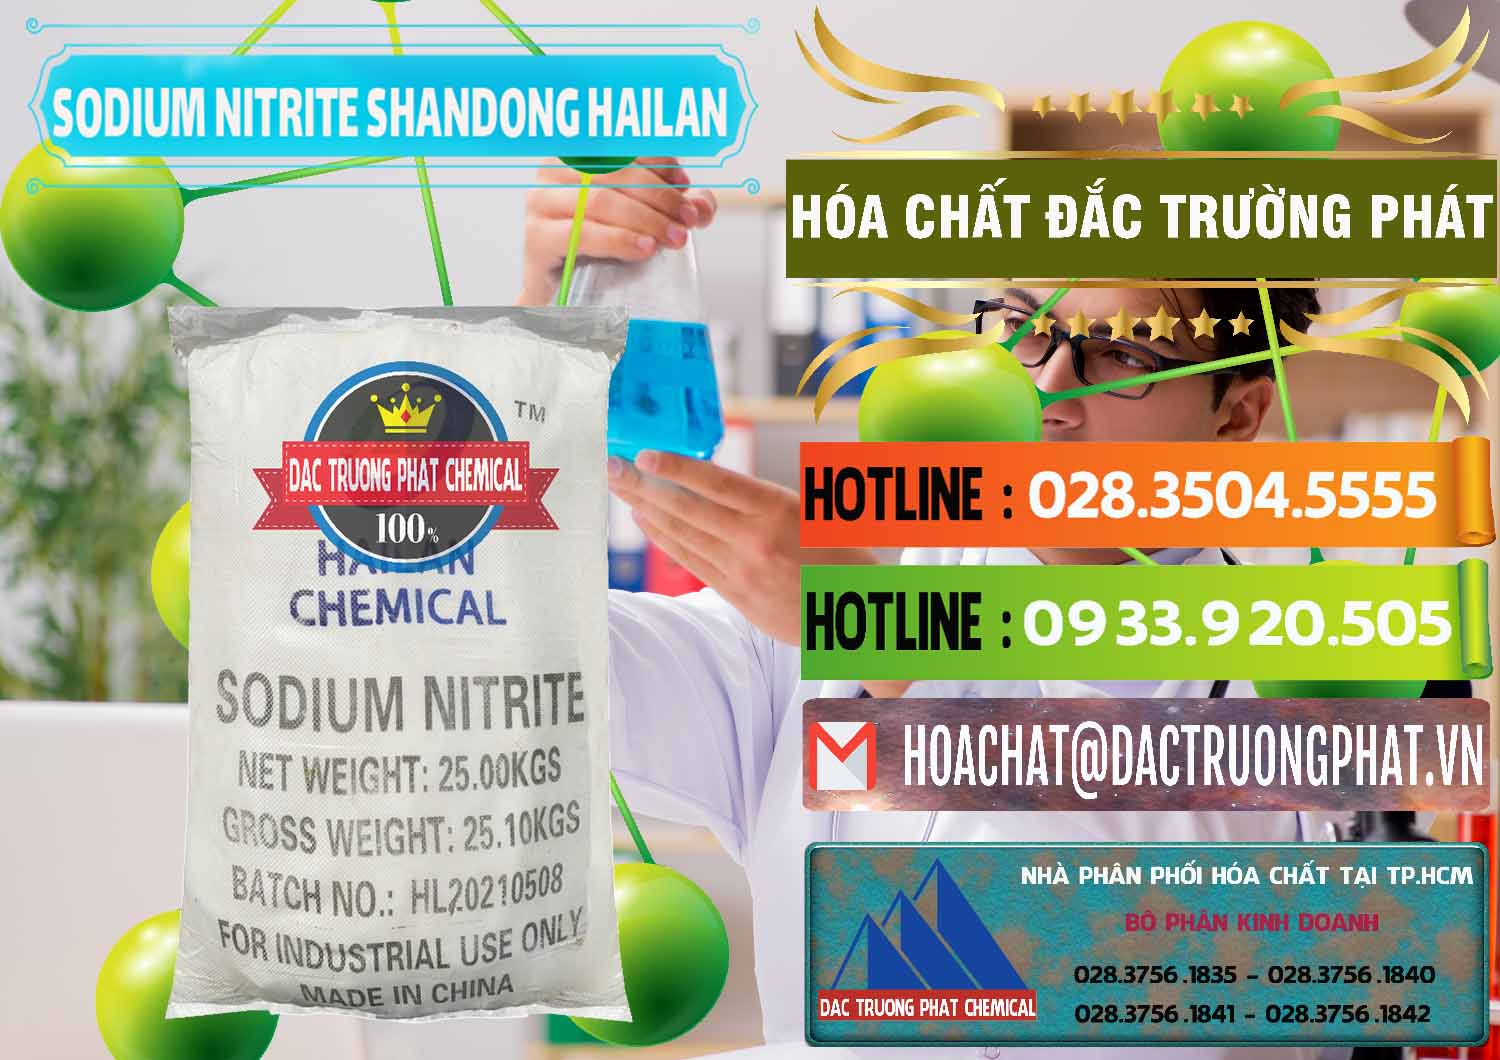 Chuyên bán và cung cấp Sodium Nitrite - NANO2 99.3% Shandong Hailan Trung Quốc China - 0284 - Đơn vị phân phối và bán hóa chất tại TP.HCM - cungcaphoachat.com.vn